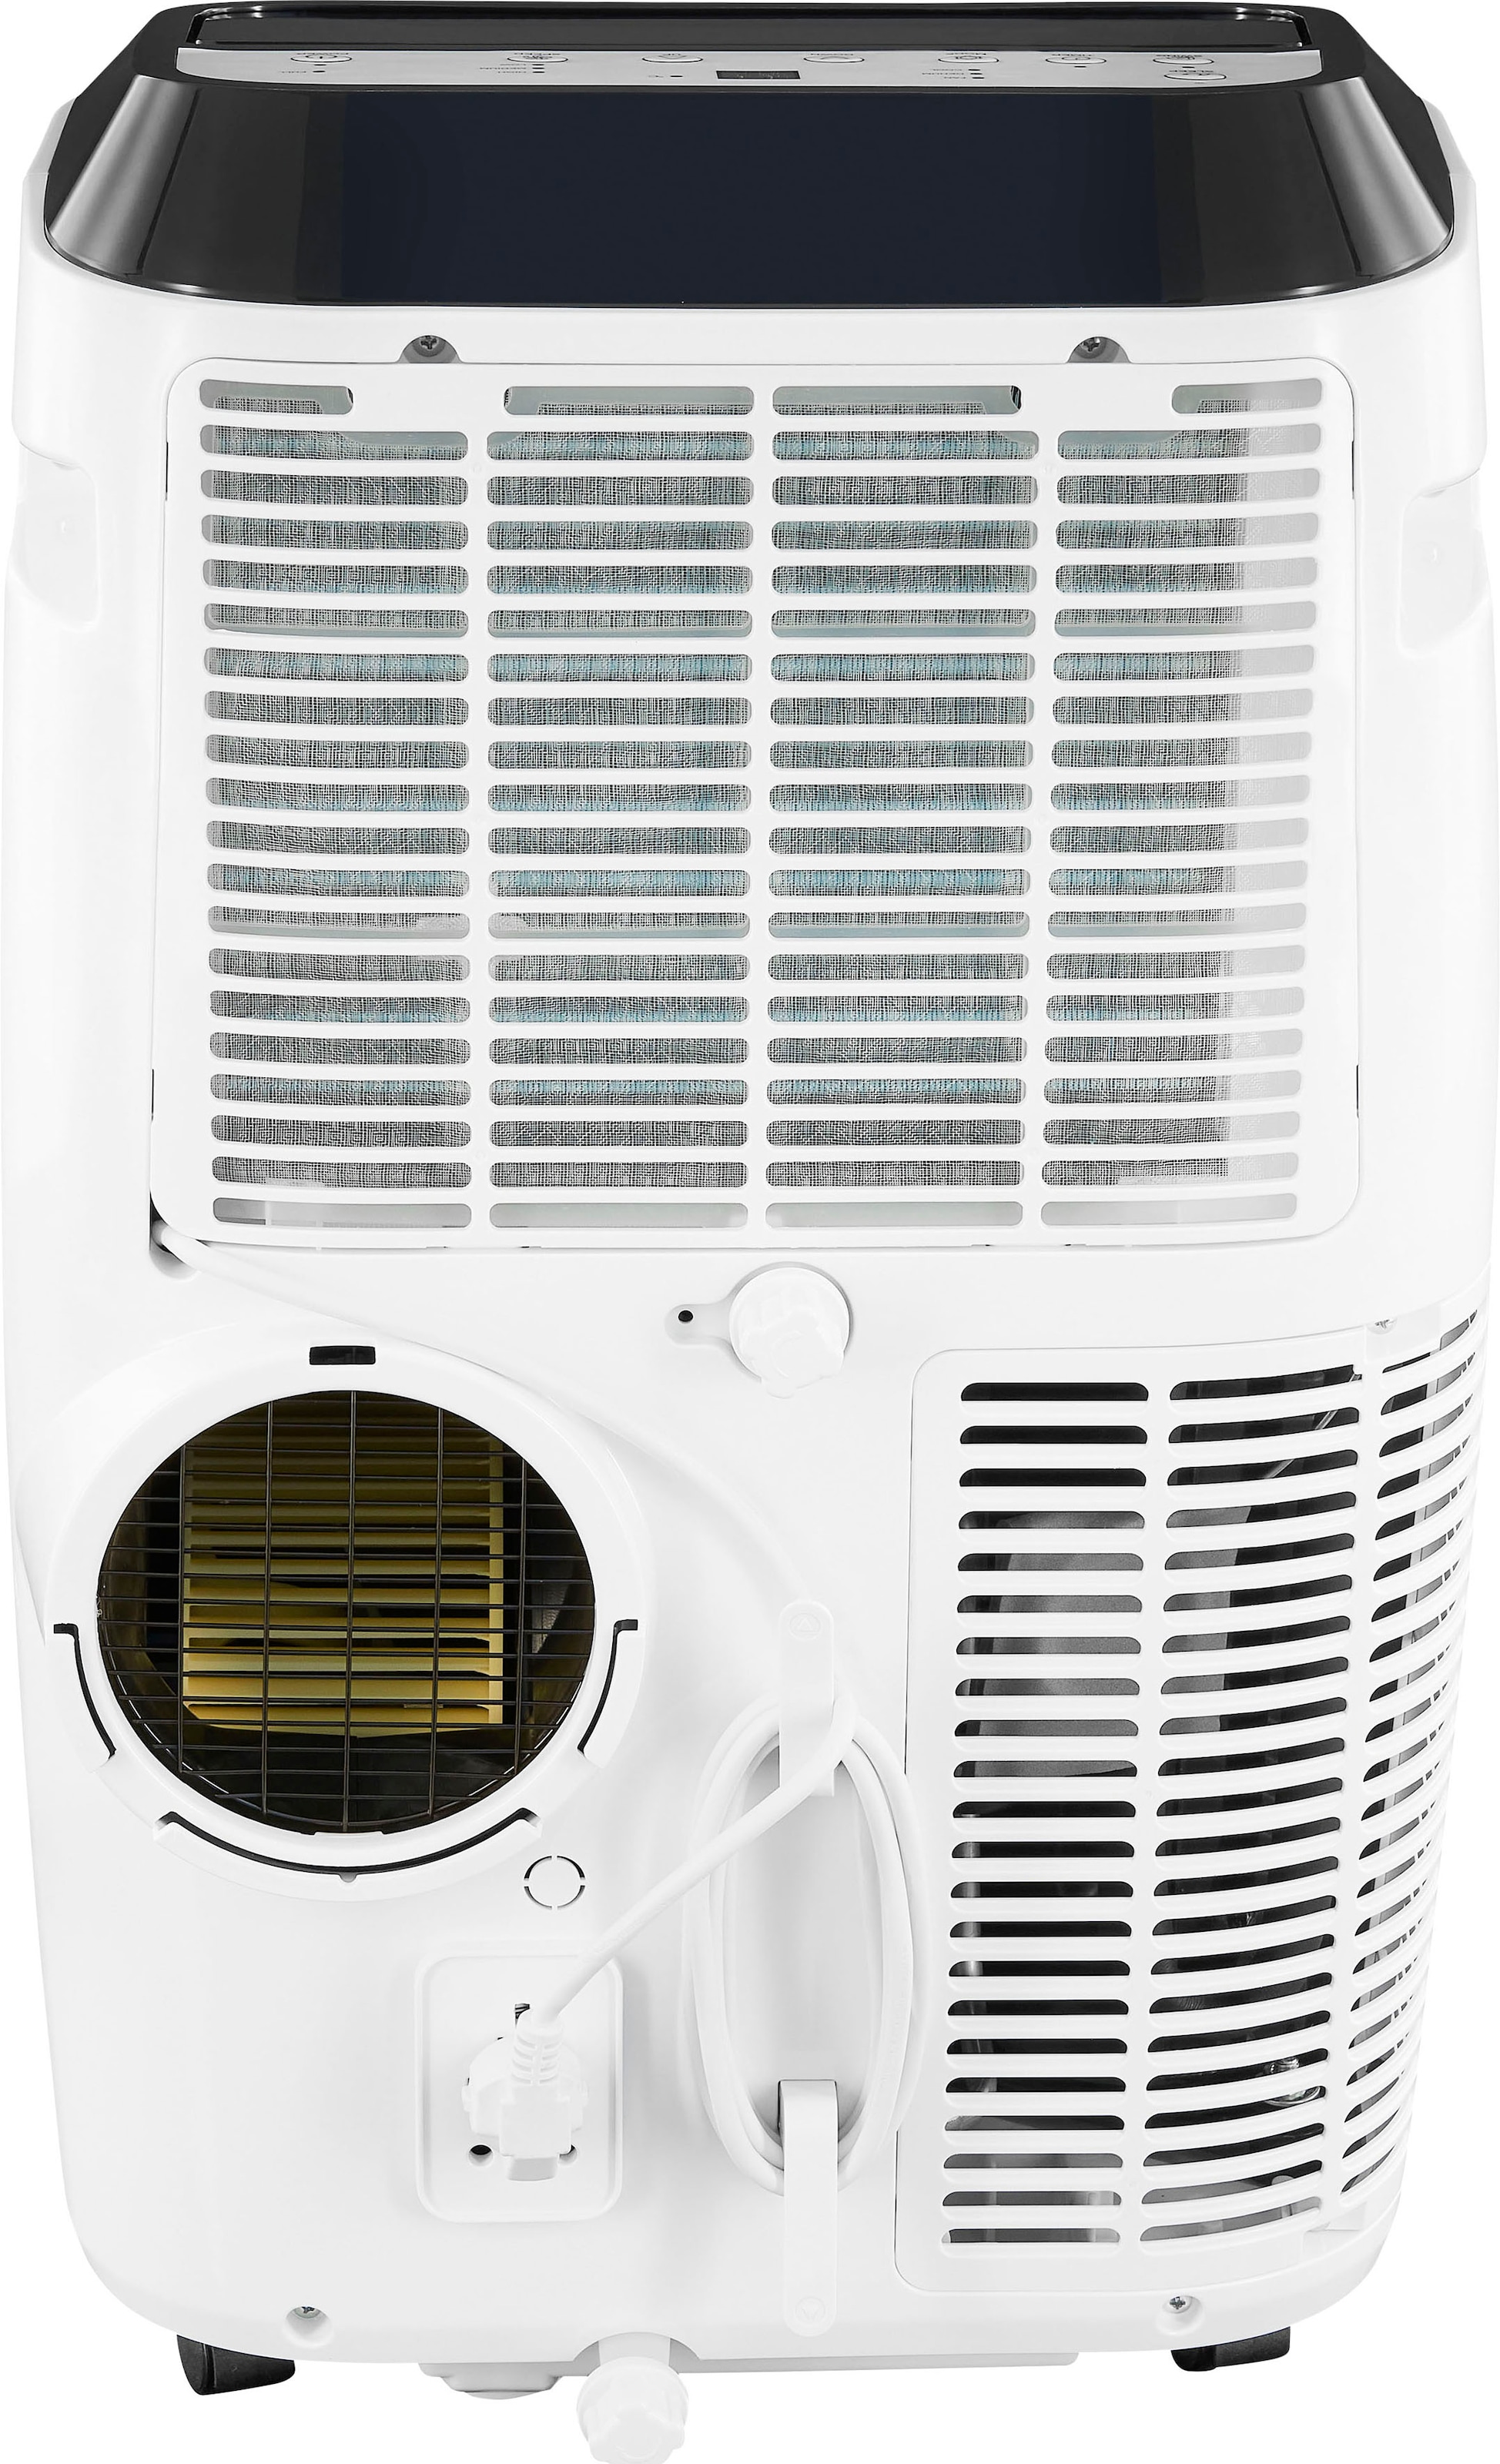 Gutfels 3-in-1-Klimagerät »CM 61249 we«, Luftkühlung - Entfeuchtung, geeignet für 38 m² Räume